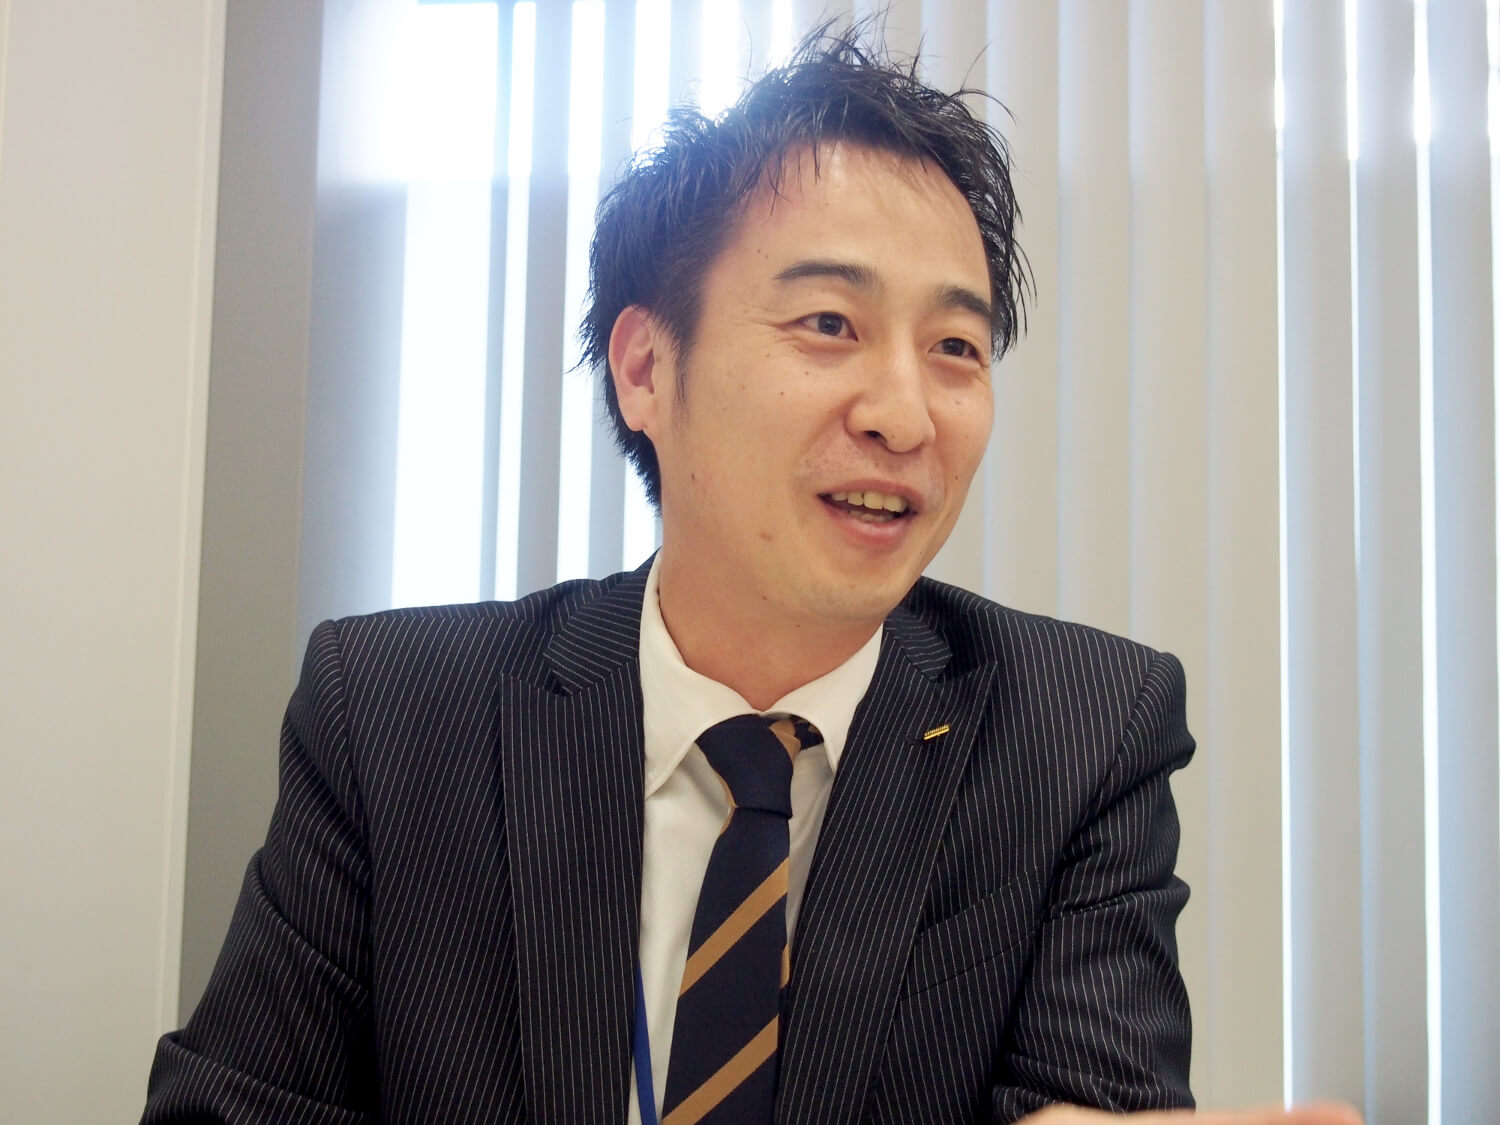 サービス強化・スタッフ育成室 マネジャー・早田貴嗣さん。2005年に入社し、エリア管轄や新規ホームの立ち上げ、有料老人ホームの事業推進に携わり、今春から人材開発を担当。